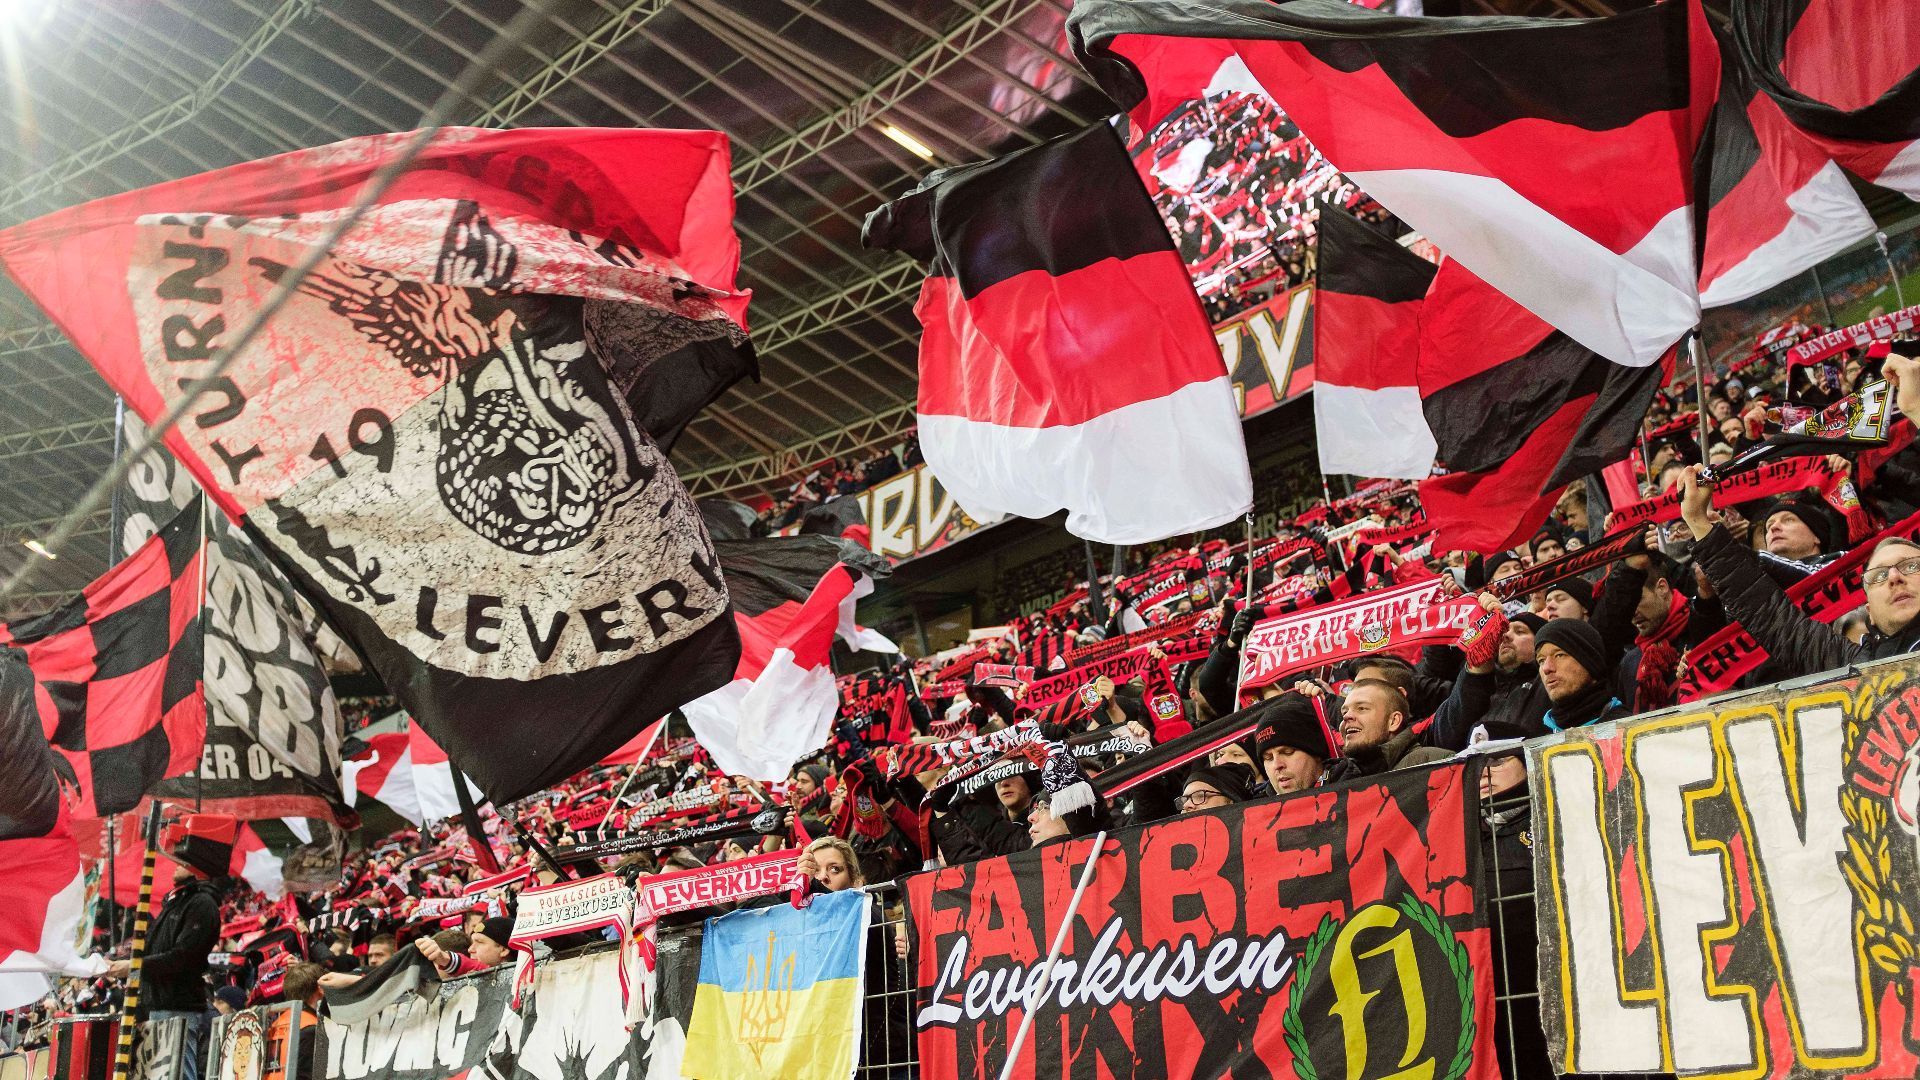 
                <strong>Platz 18 - BayArena (Bayer Leverkusen)</strong><br>
                Die zweitteuersten Jahreskarten. Dafür aber weder bei der Atmosphäre noch bei der Barrierefreiheit mit Top-Werten. Die BayArena schafft es im Stadionranking nur auf den letzten Platz.
              